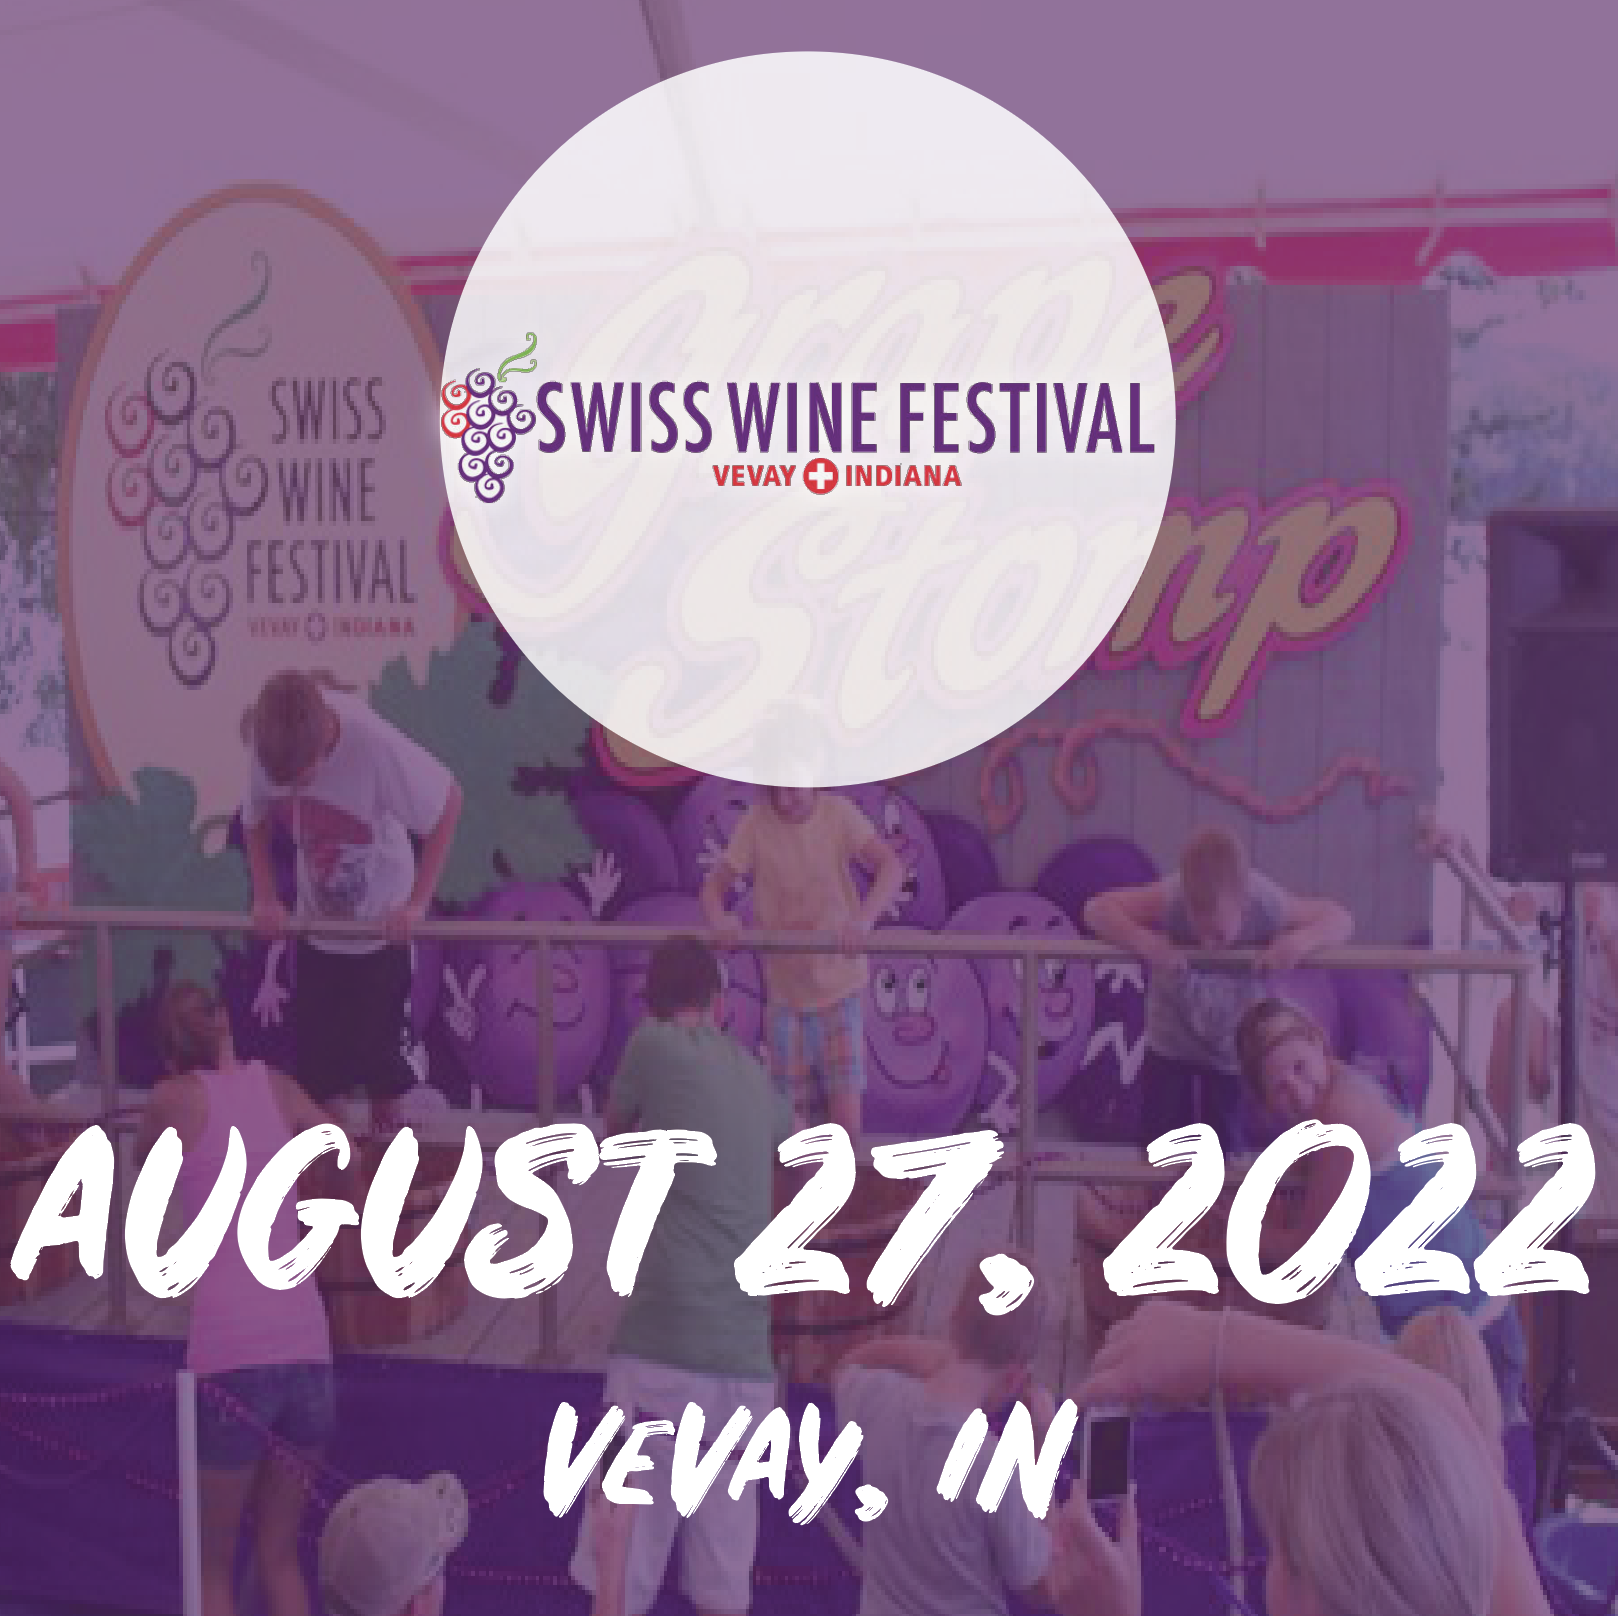 Swiss Wine Festival 2022 Date